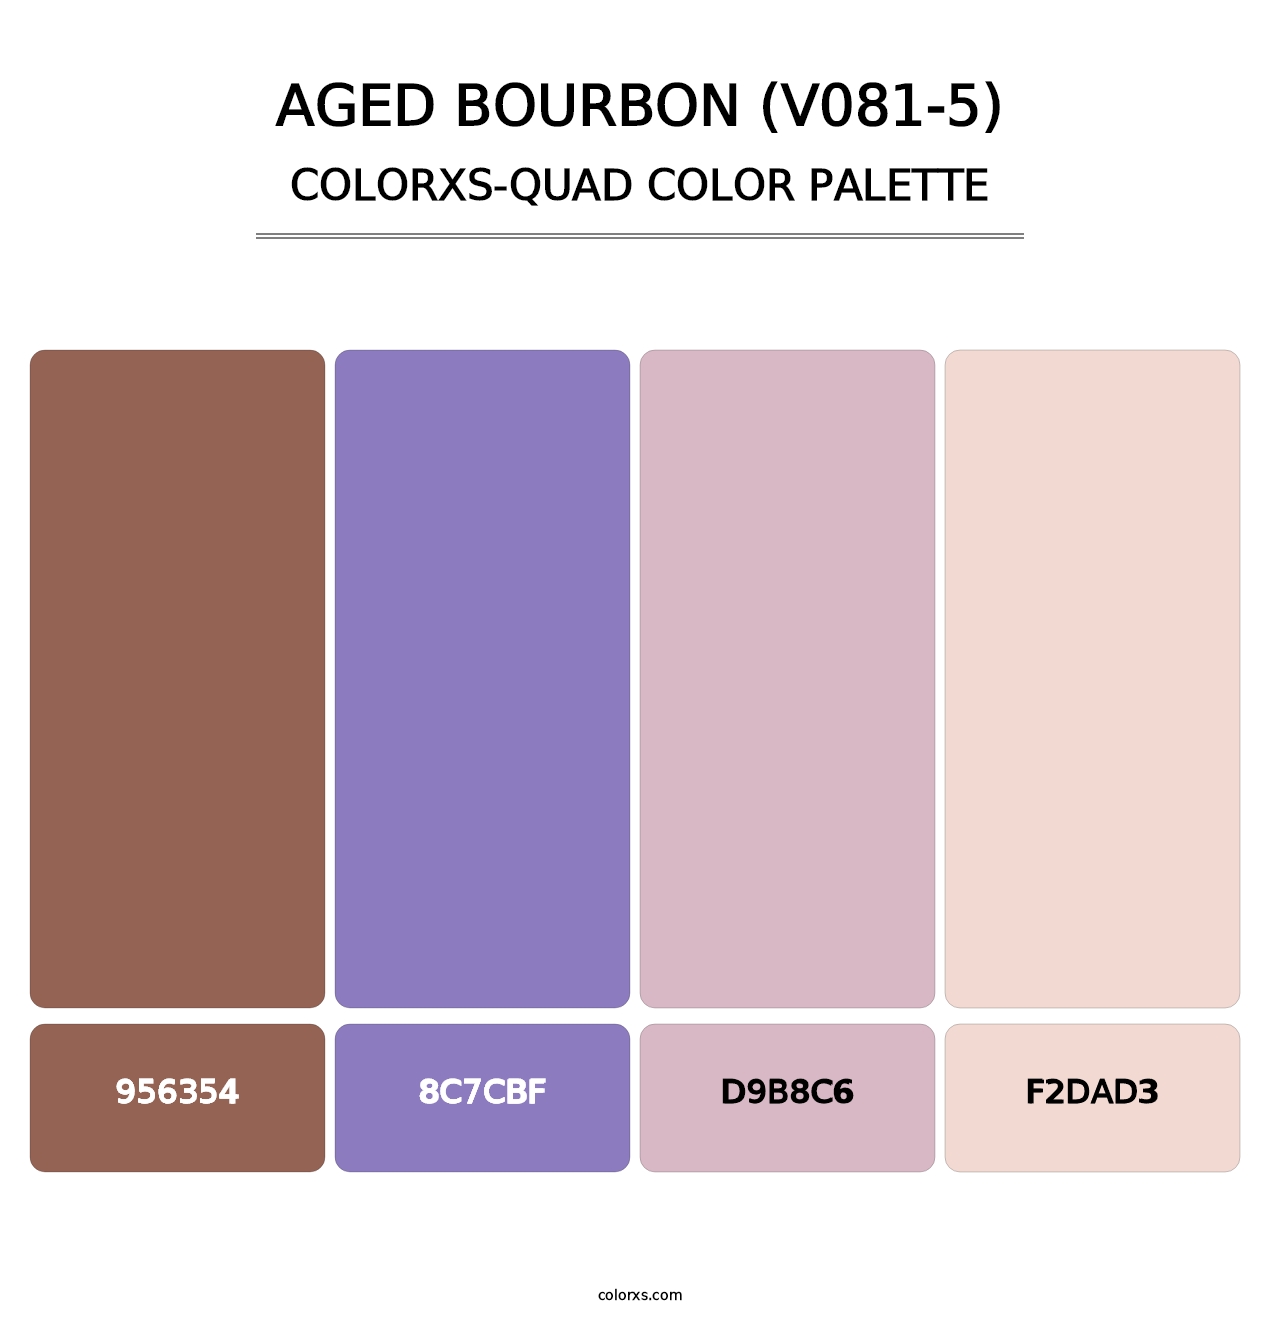 Aged Bourbon (V081-5) - Colorxs Quad Palette